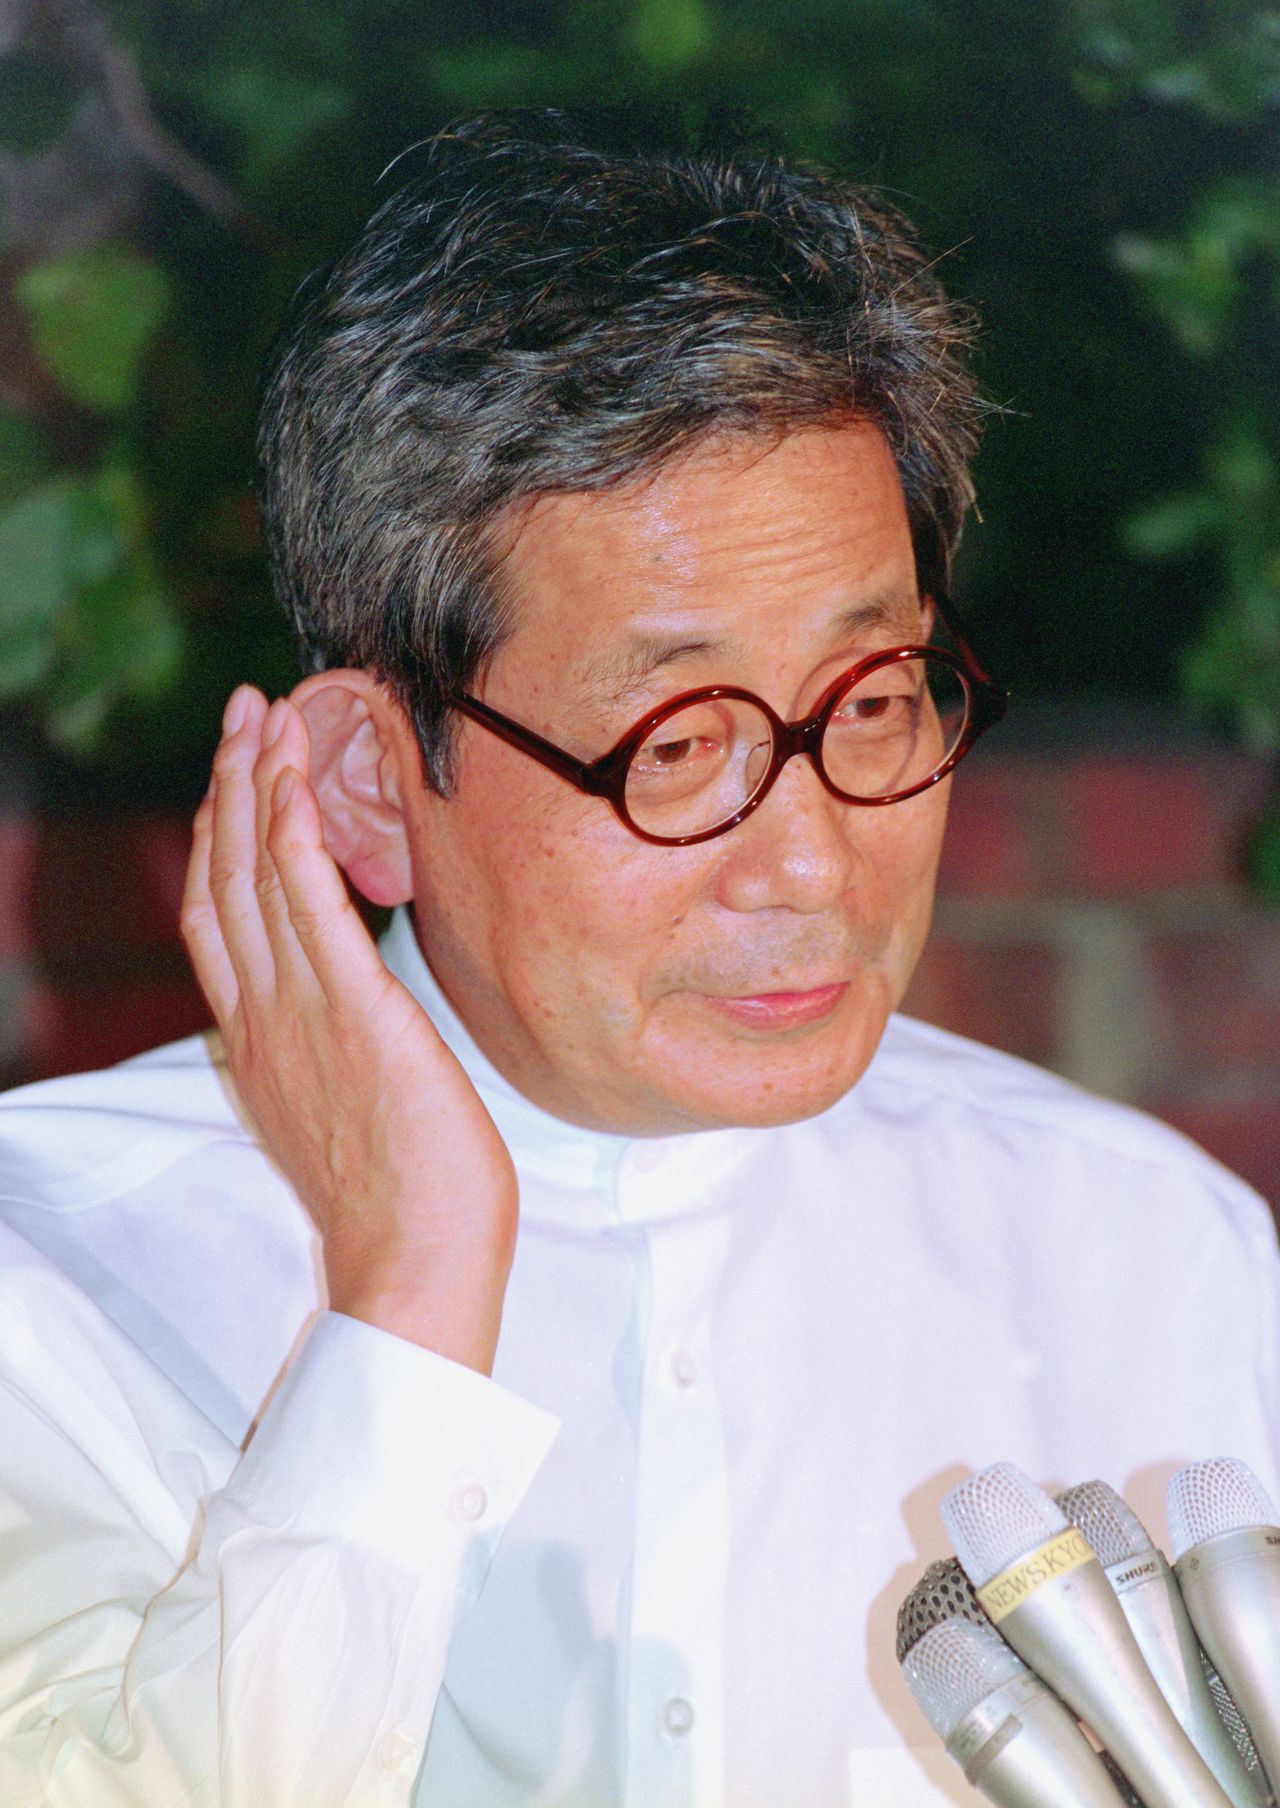 Ôe Kenzaburô parle à la presse devant sa maison le 13 octobre 1994, après avoir reçu le prix Nobel de littérature. (Jiji)